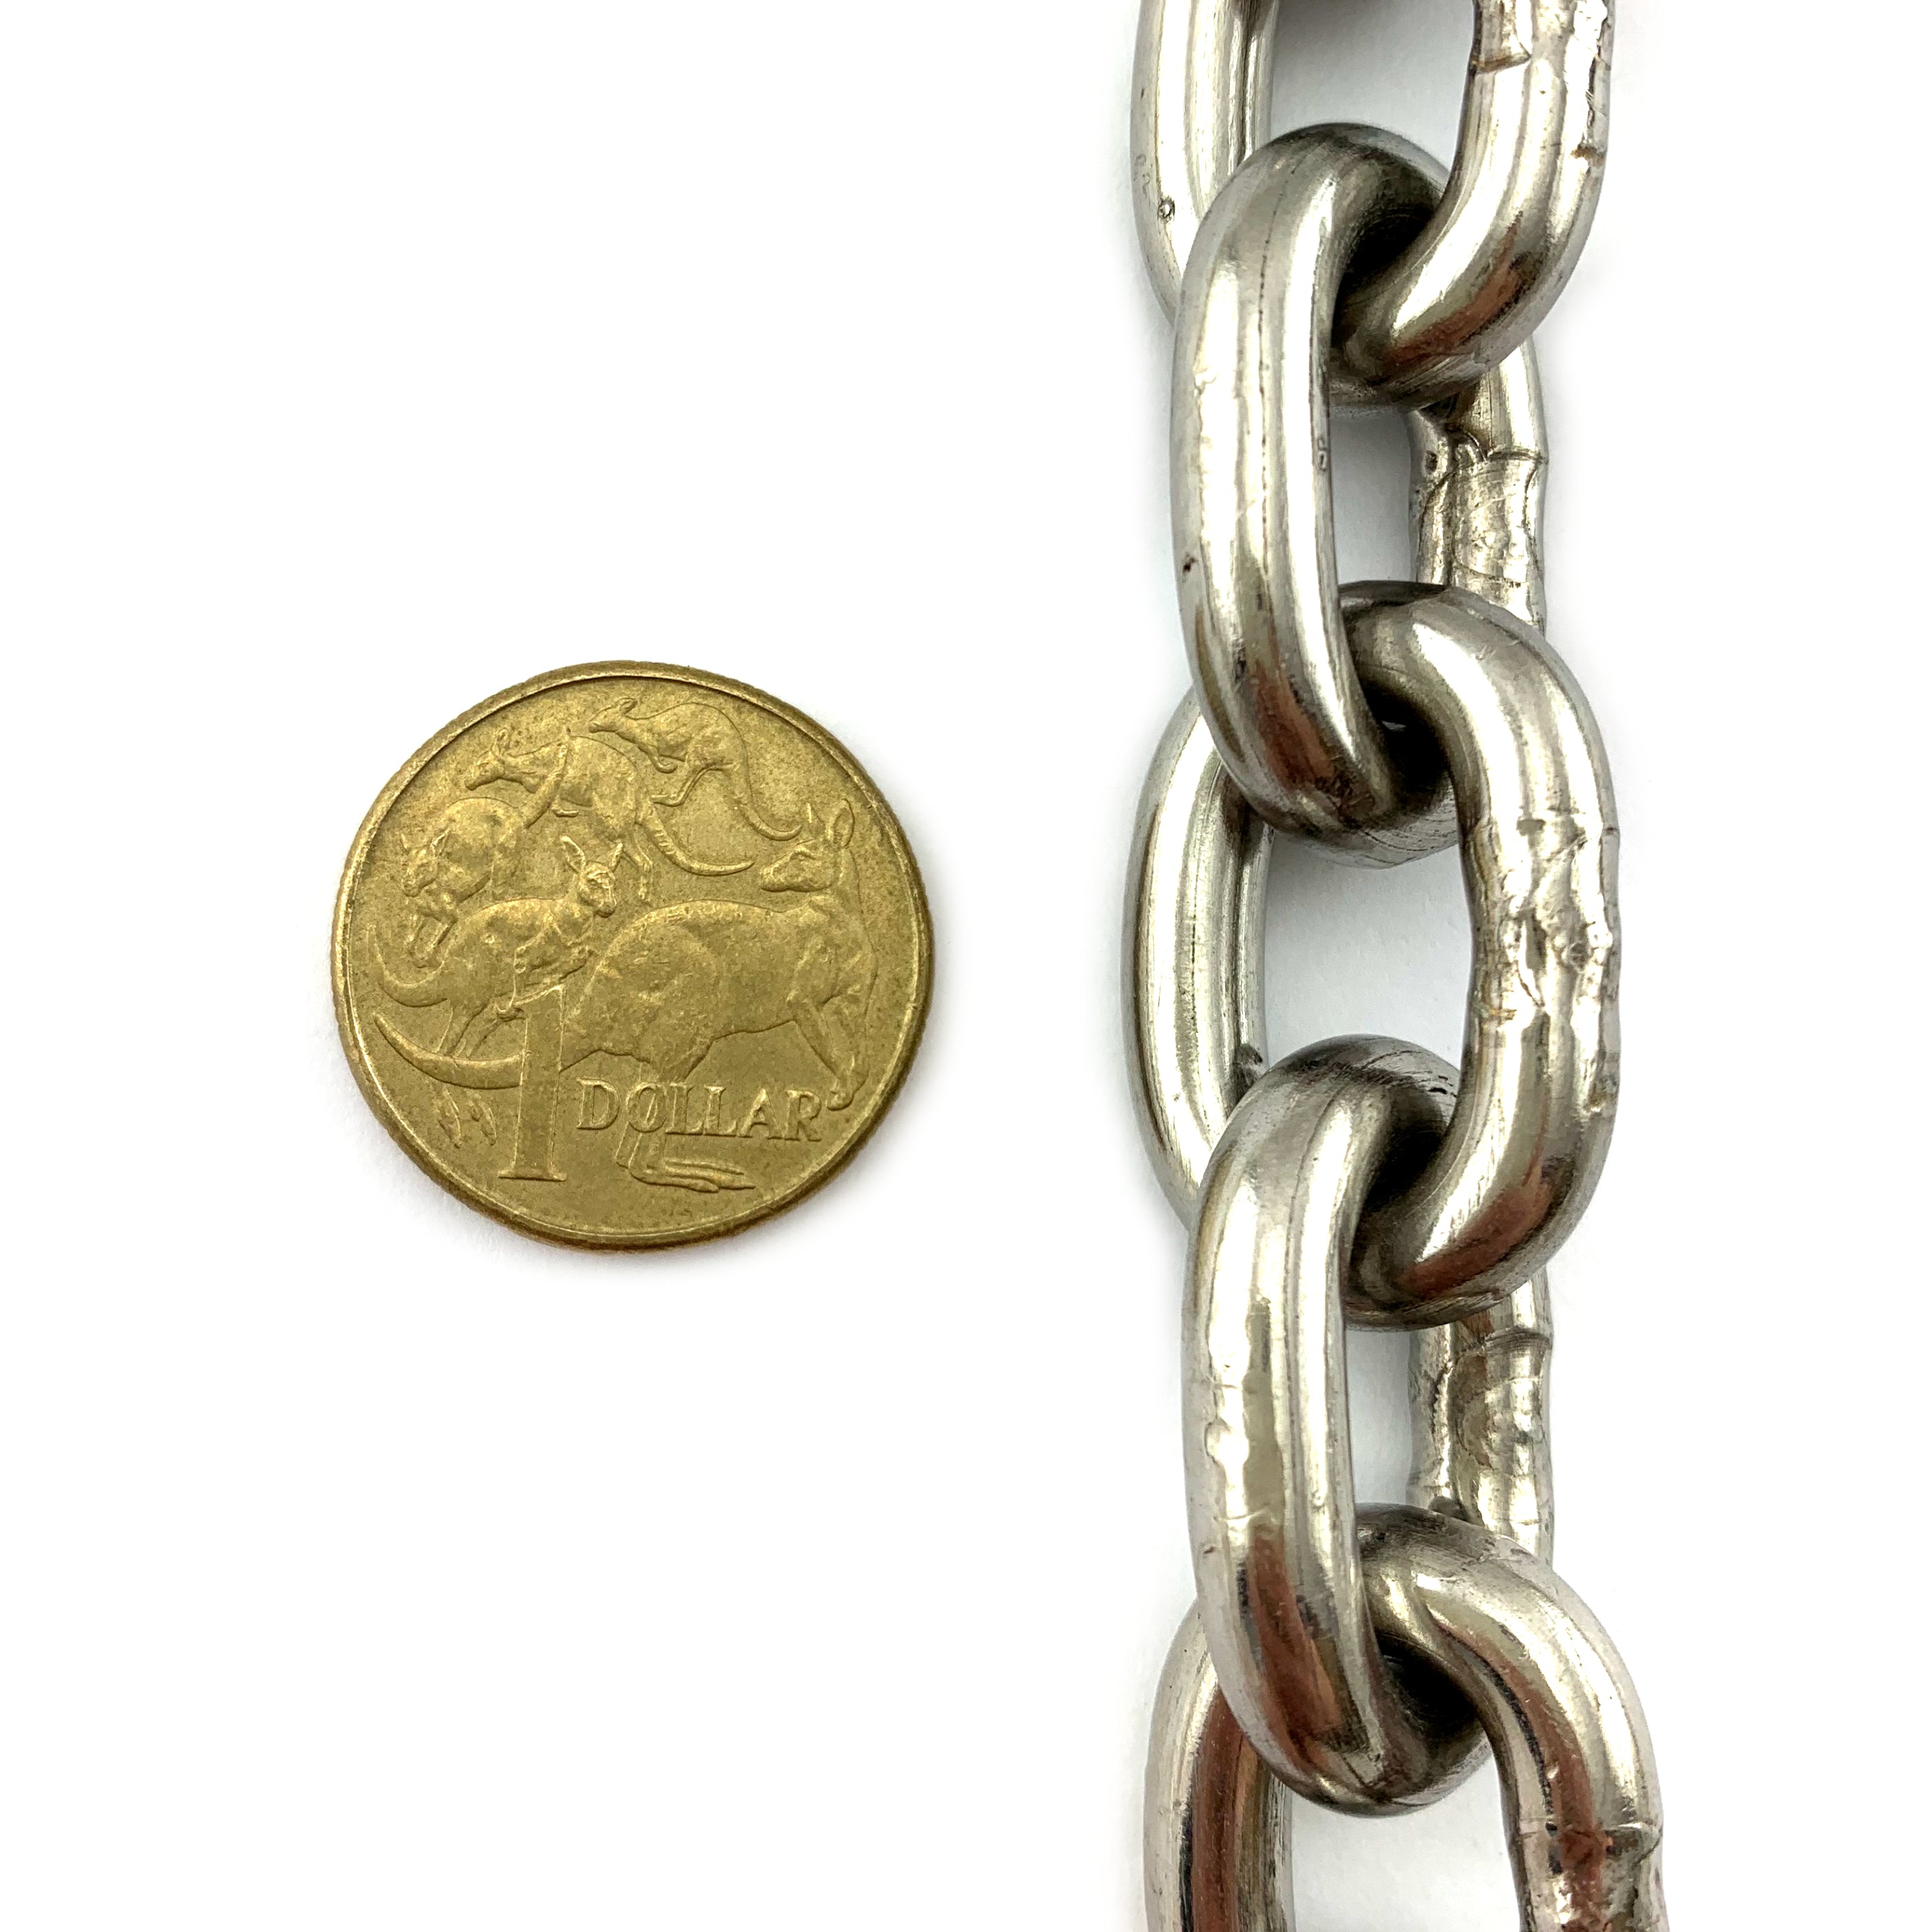 6mm Stainless Steel Short Link Welded Chain. Australia.